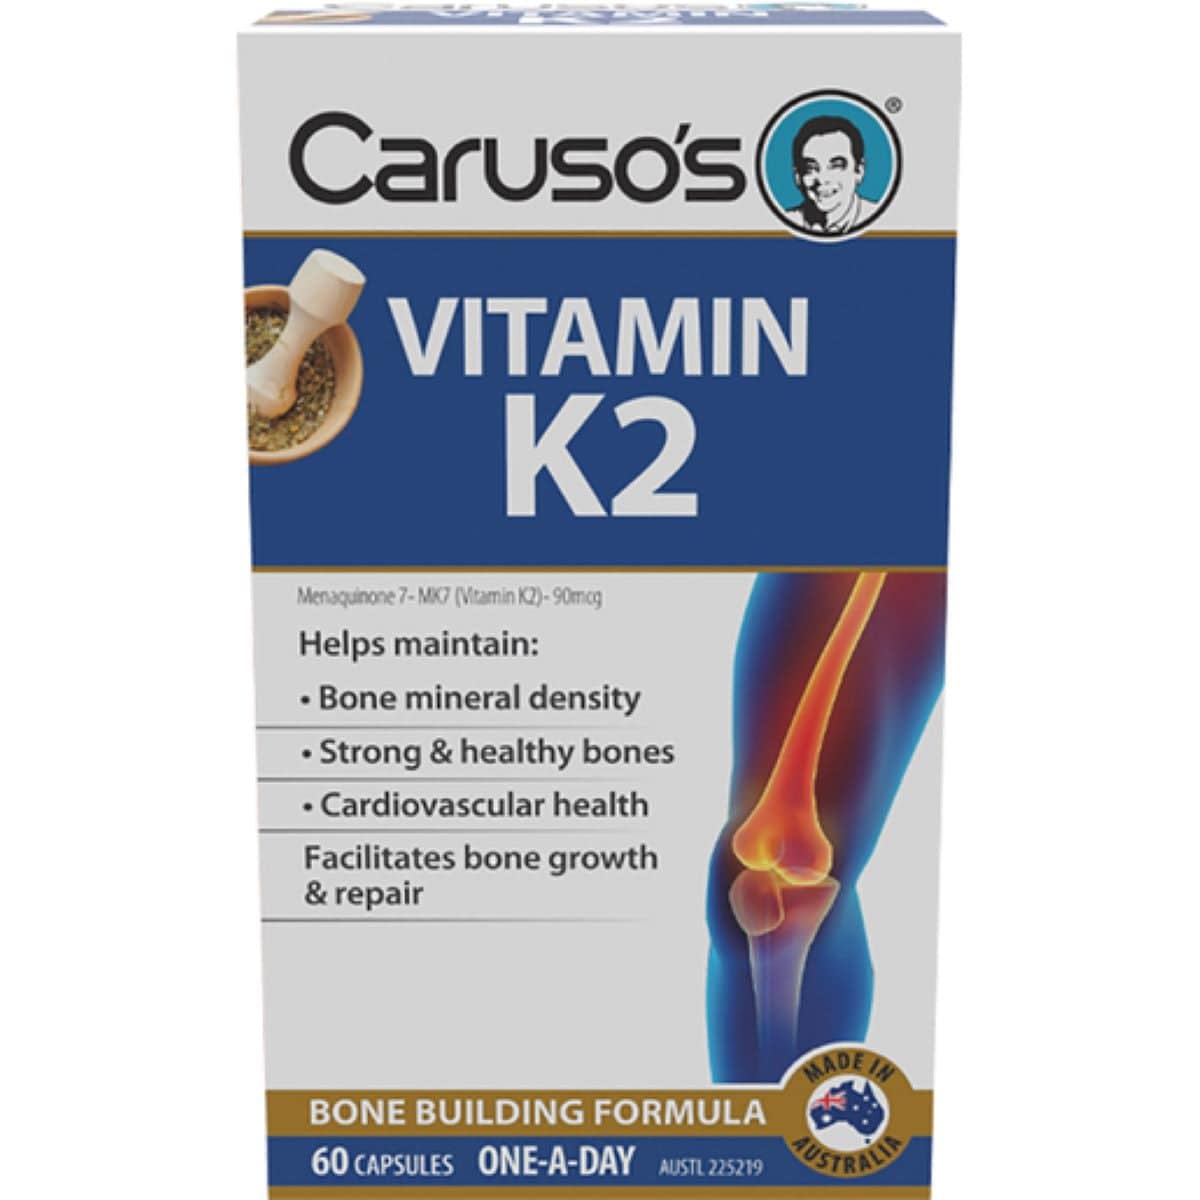 Carusos Vitamin K2 60 Capsules Australia